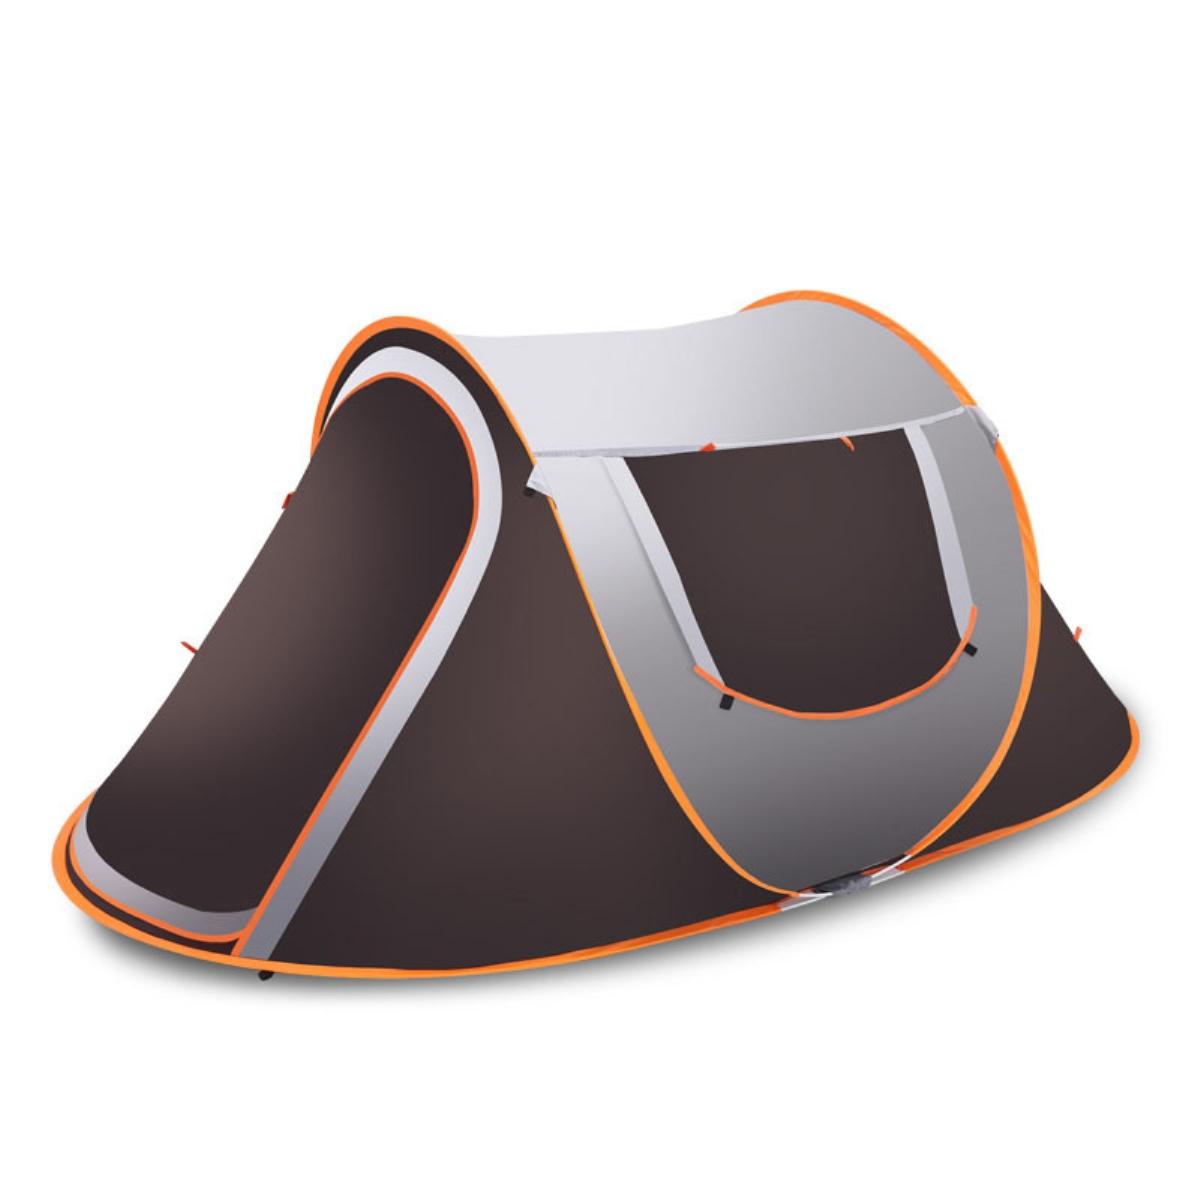 3-4 kişilik açık hava anında açılan su geçirmez güneşlik tente, yağmur barınağı kamp yürüyüş için ideal.